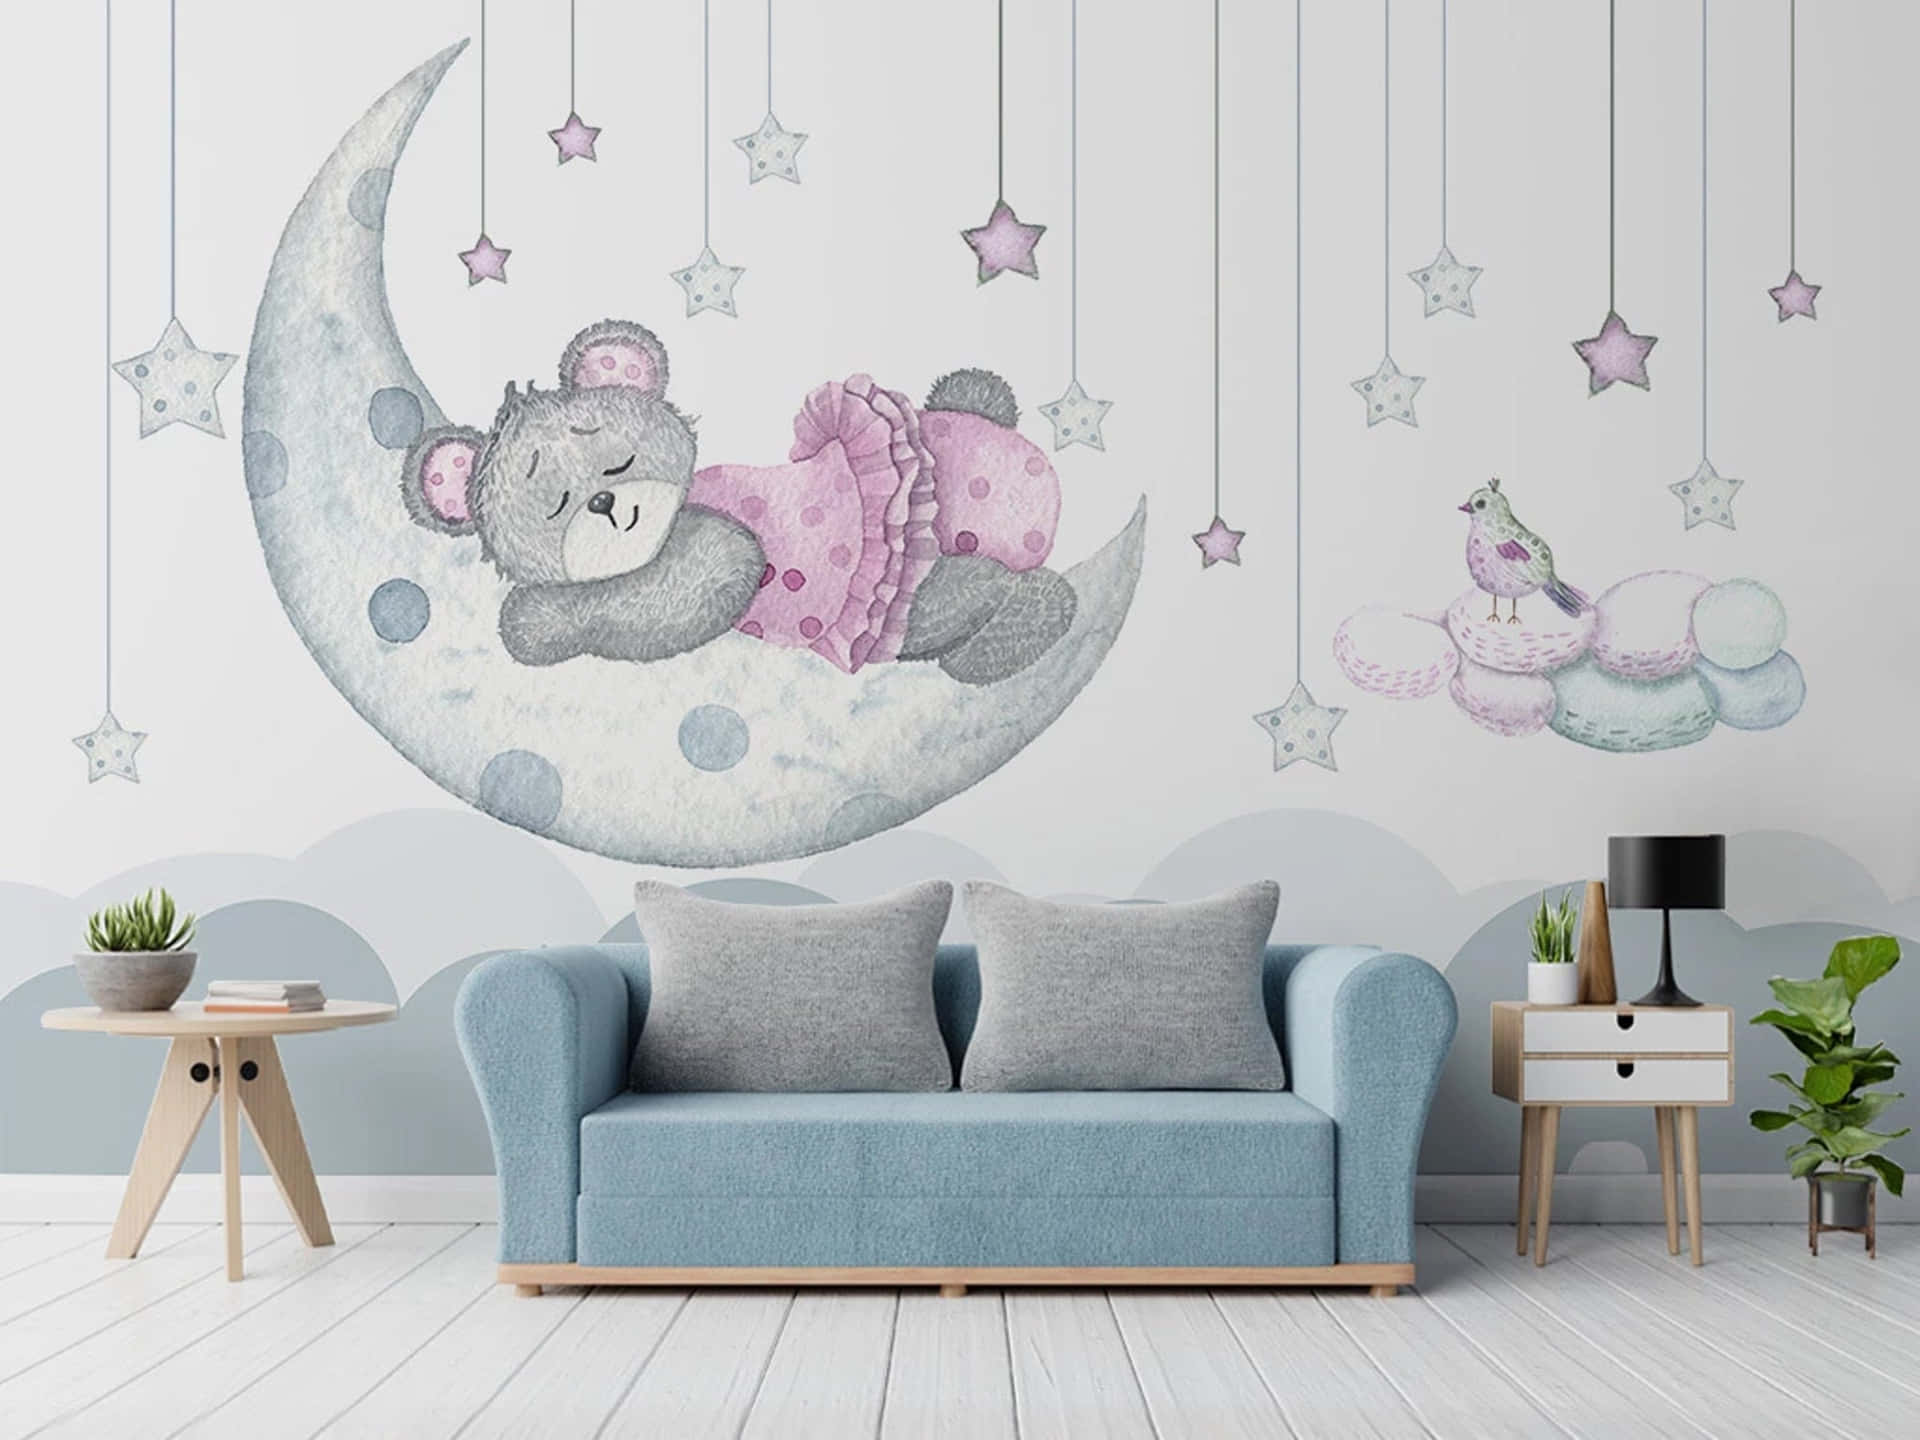 Schauin Den Nächtlichen Himmel Hinauf Und Du Kannst Den Schönen Niedlichen Mond Sehen. Wallpaper